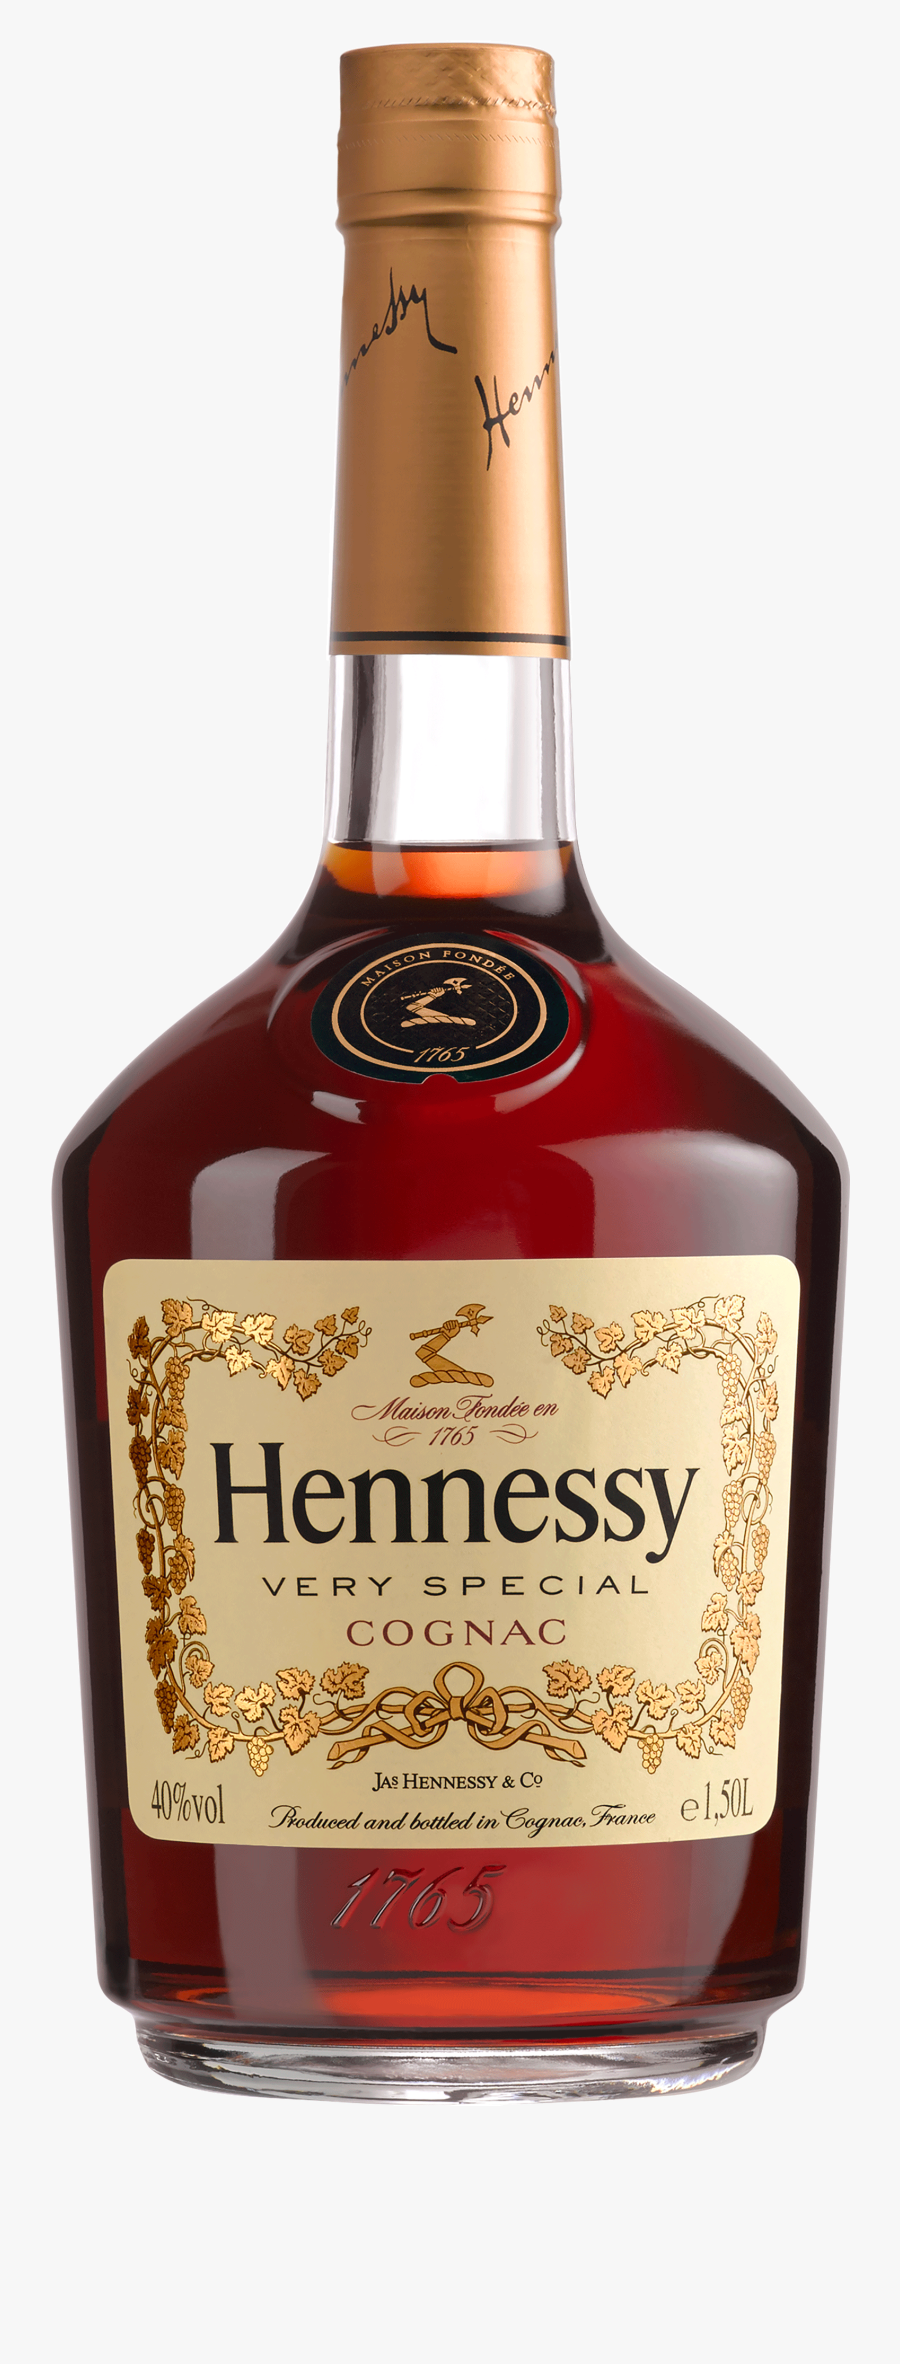 Henny Bottle Png - Hennessy Bottle Png, Transparent Clipart